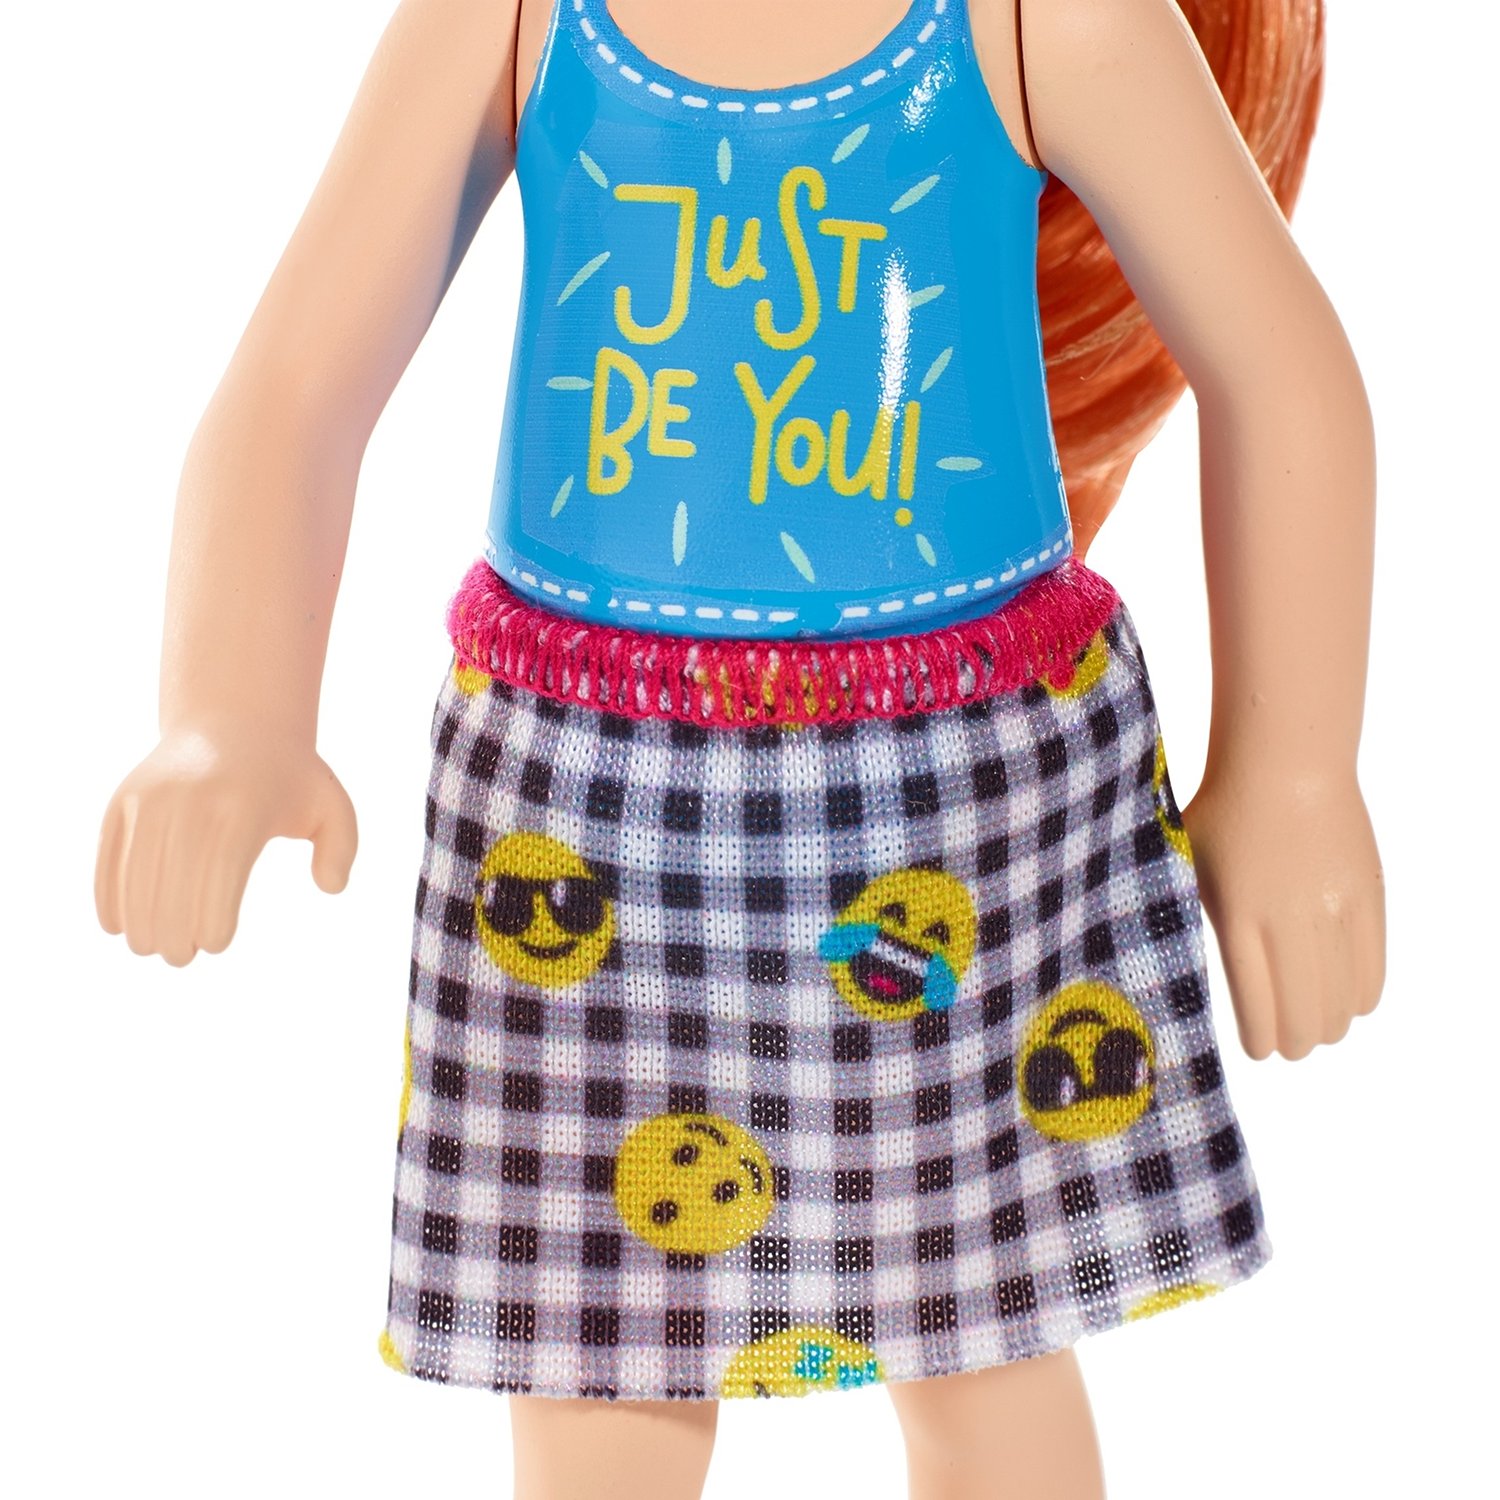 Кукла Barbie FXG81 Челси Рыжеволосая, 14 см